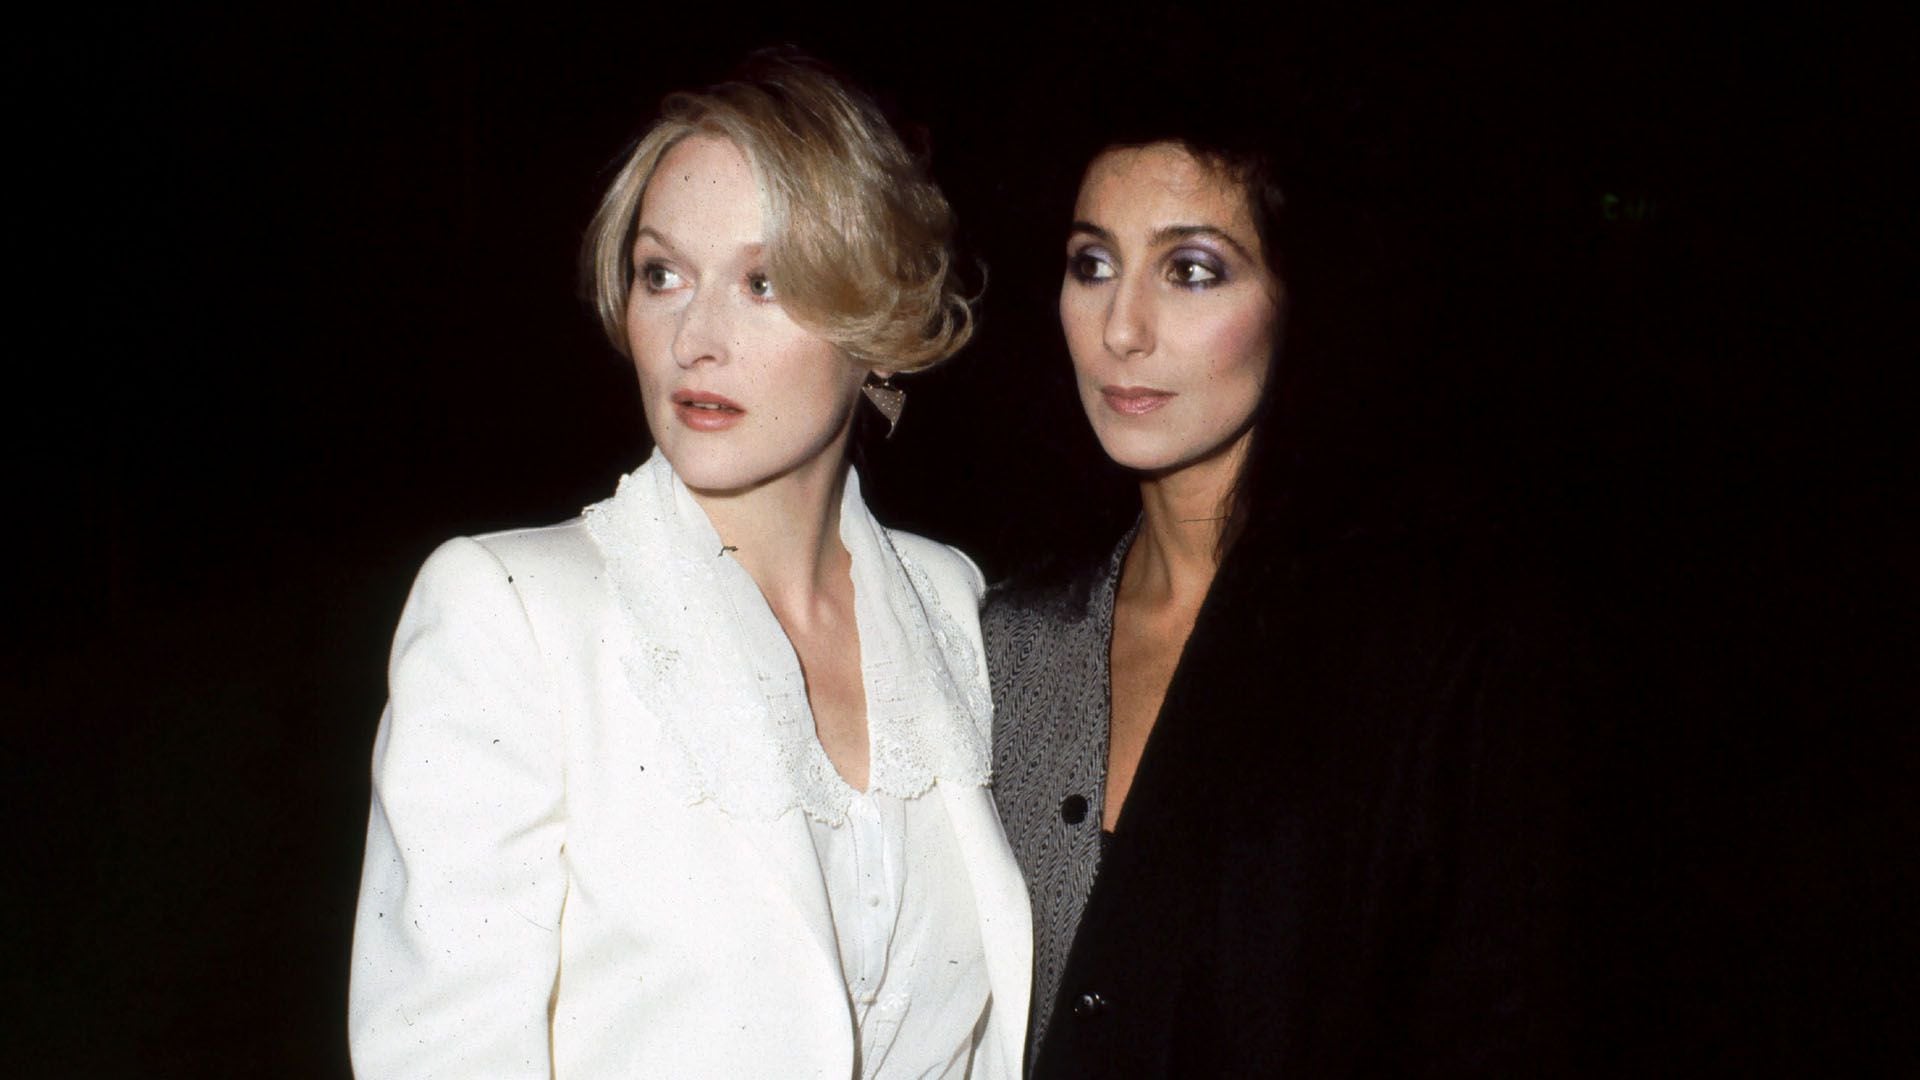 Meryl Streep y Cher, ambas ganadoras del Oscar, han mantenido una amistad de más de 35 años  (Foto Bei/Shutterstock)
